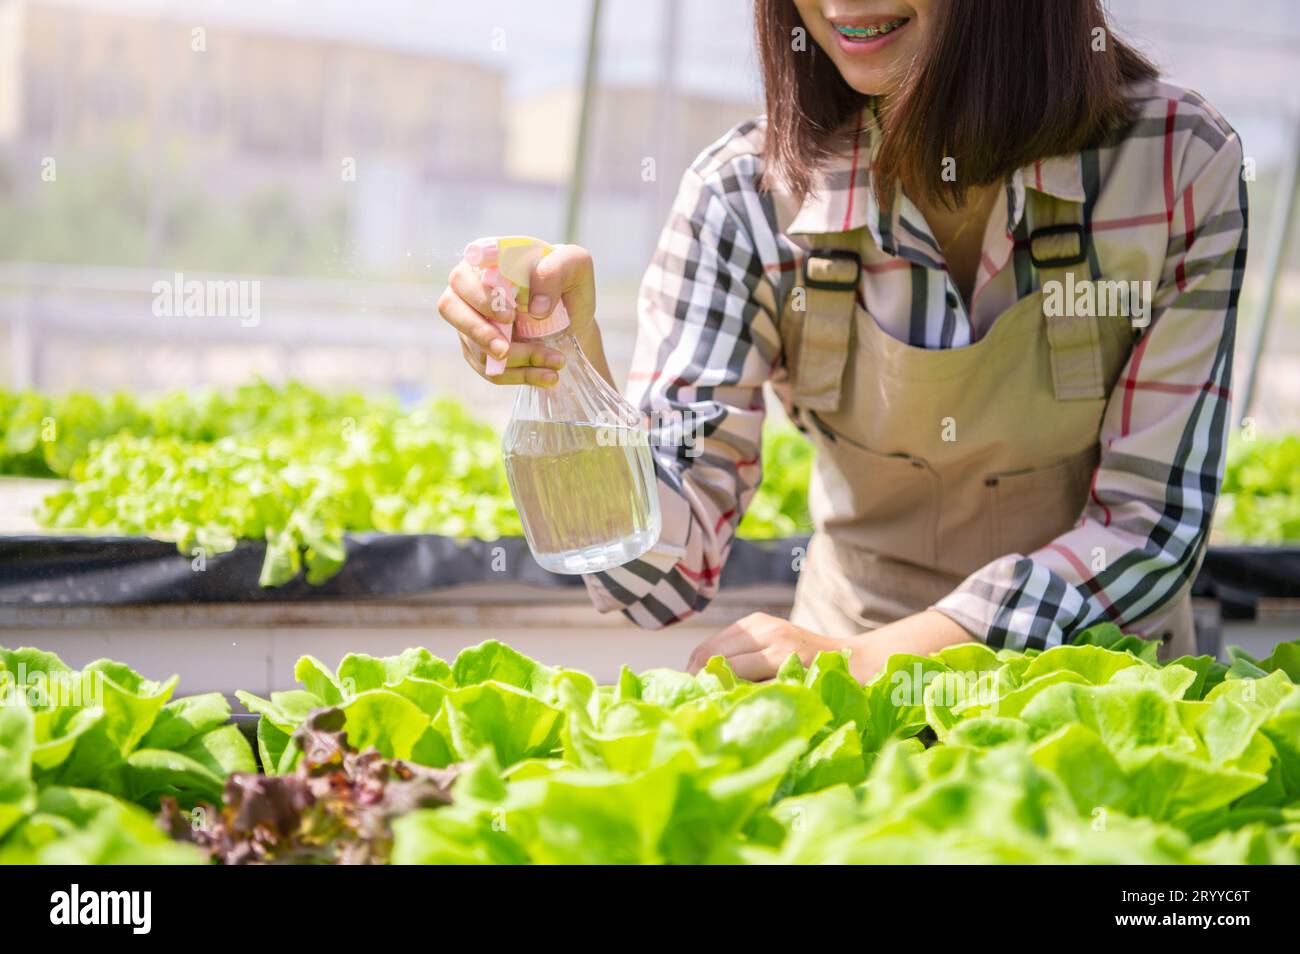 Nahaufnahme von nebeliger Wassersprühflasche bei Landwirtinnen, die Hand zum Keimen von hydroponischem Gemüse in Gewächshausgarten sprühten Stockfoto